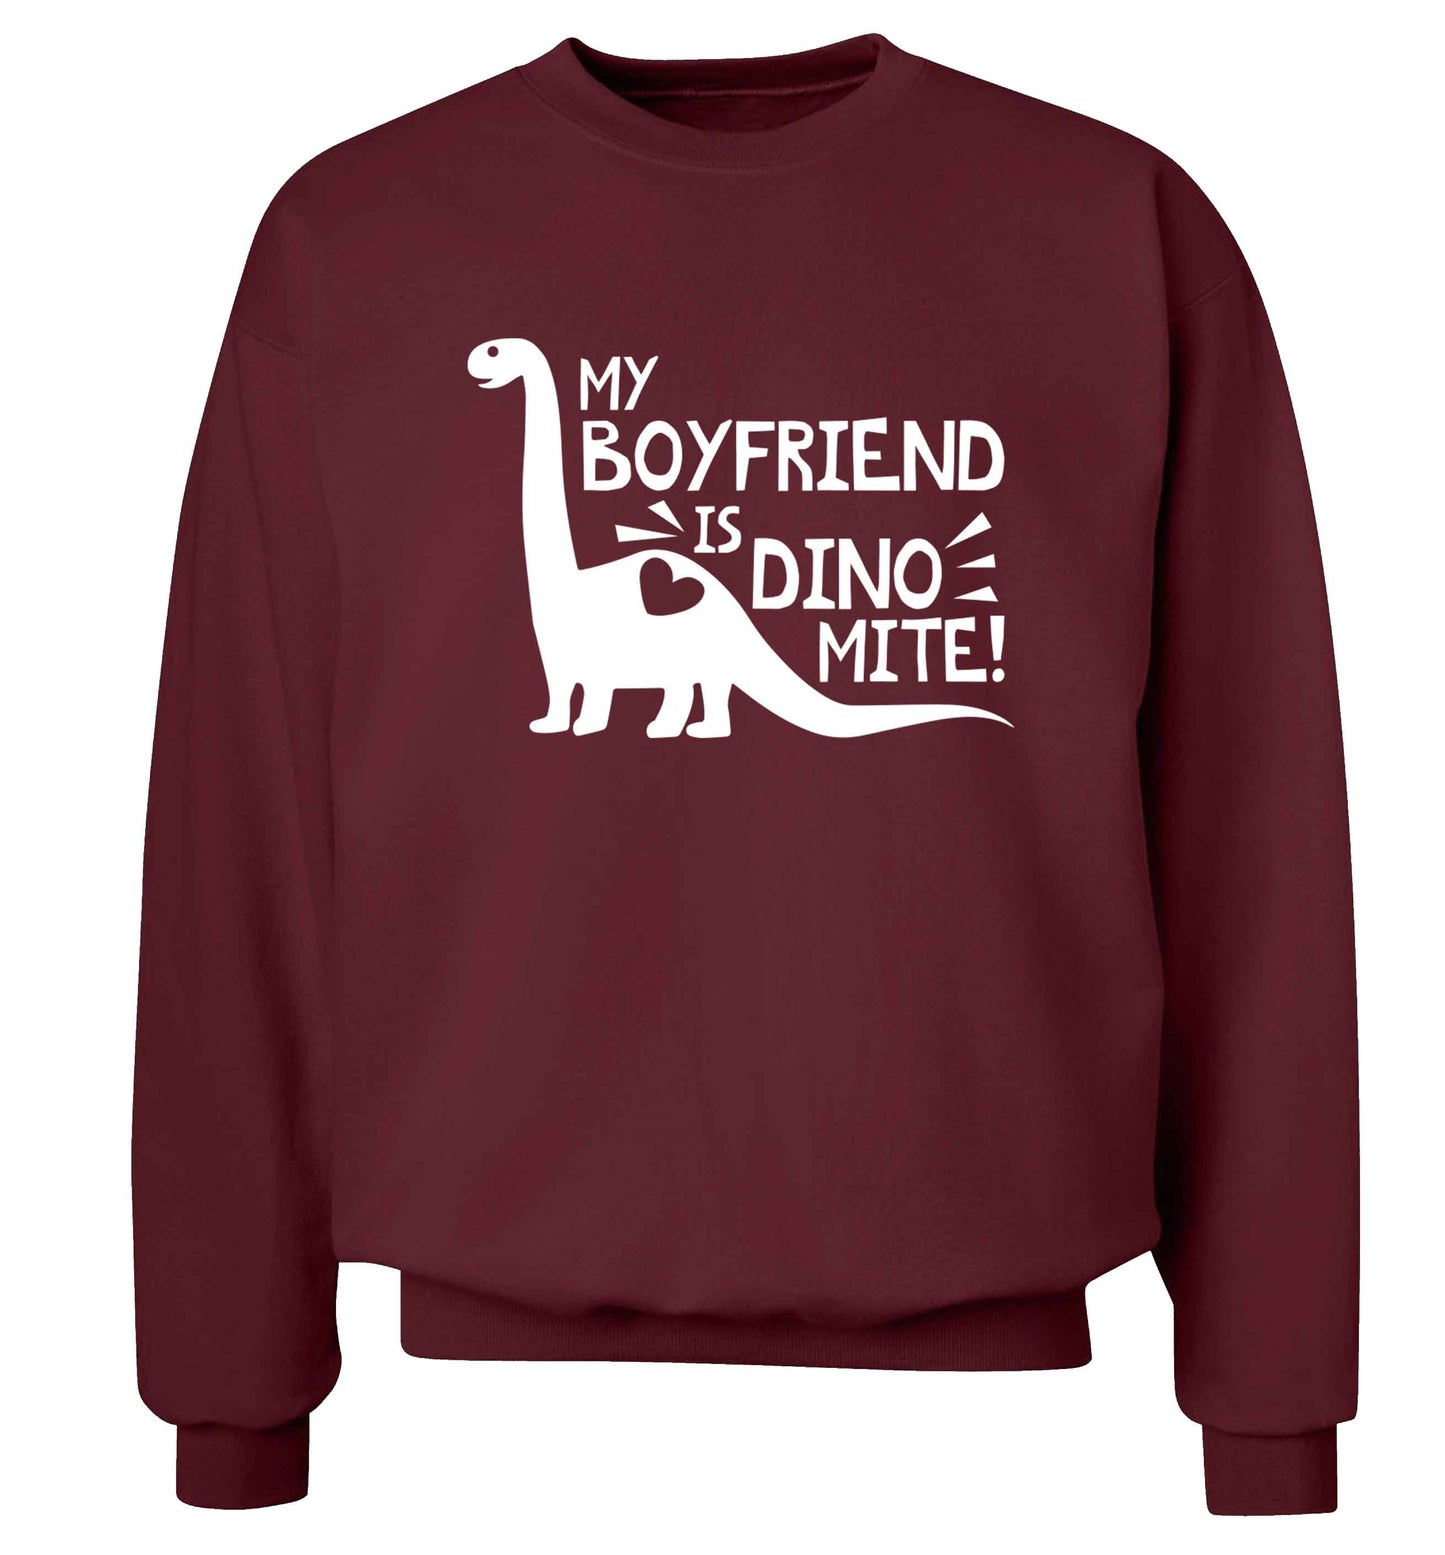 My boyfriend is dinomite! Adult's unisex maroon Sweater 2XL